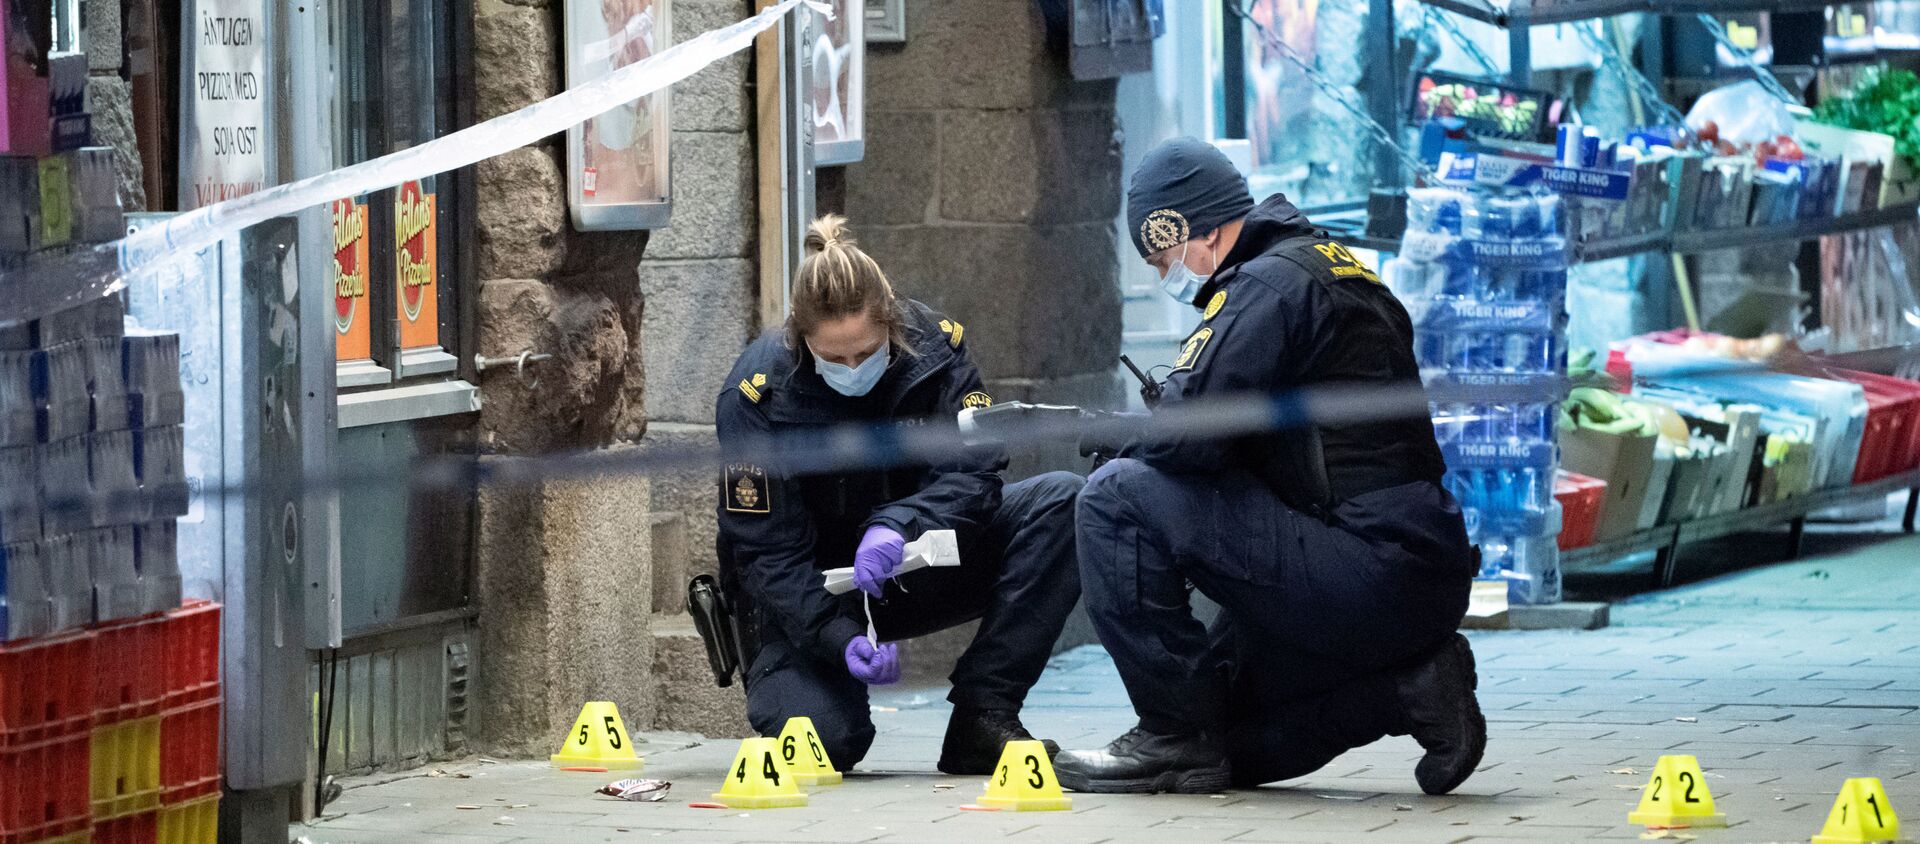 İsveç'in Malmö kentinin merkezindeki bir pizzacının önünde 15 yaşında bir genci öldüren, diğerini yaralayan silahlı saldırıyla ilgili polisin olay yeri araştırması - Sputnik Türkiye, 1920, 15.11.2019